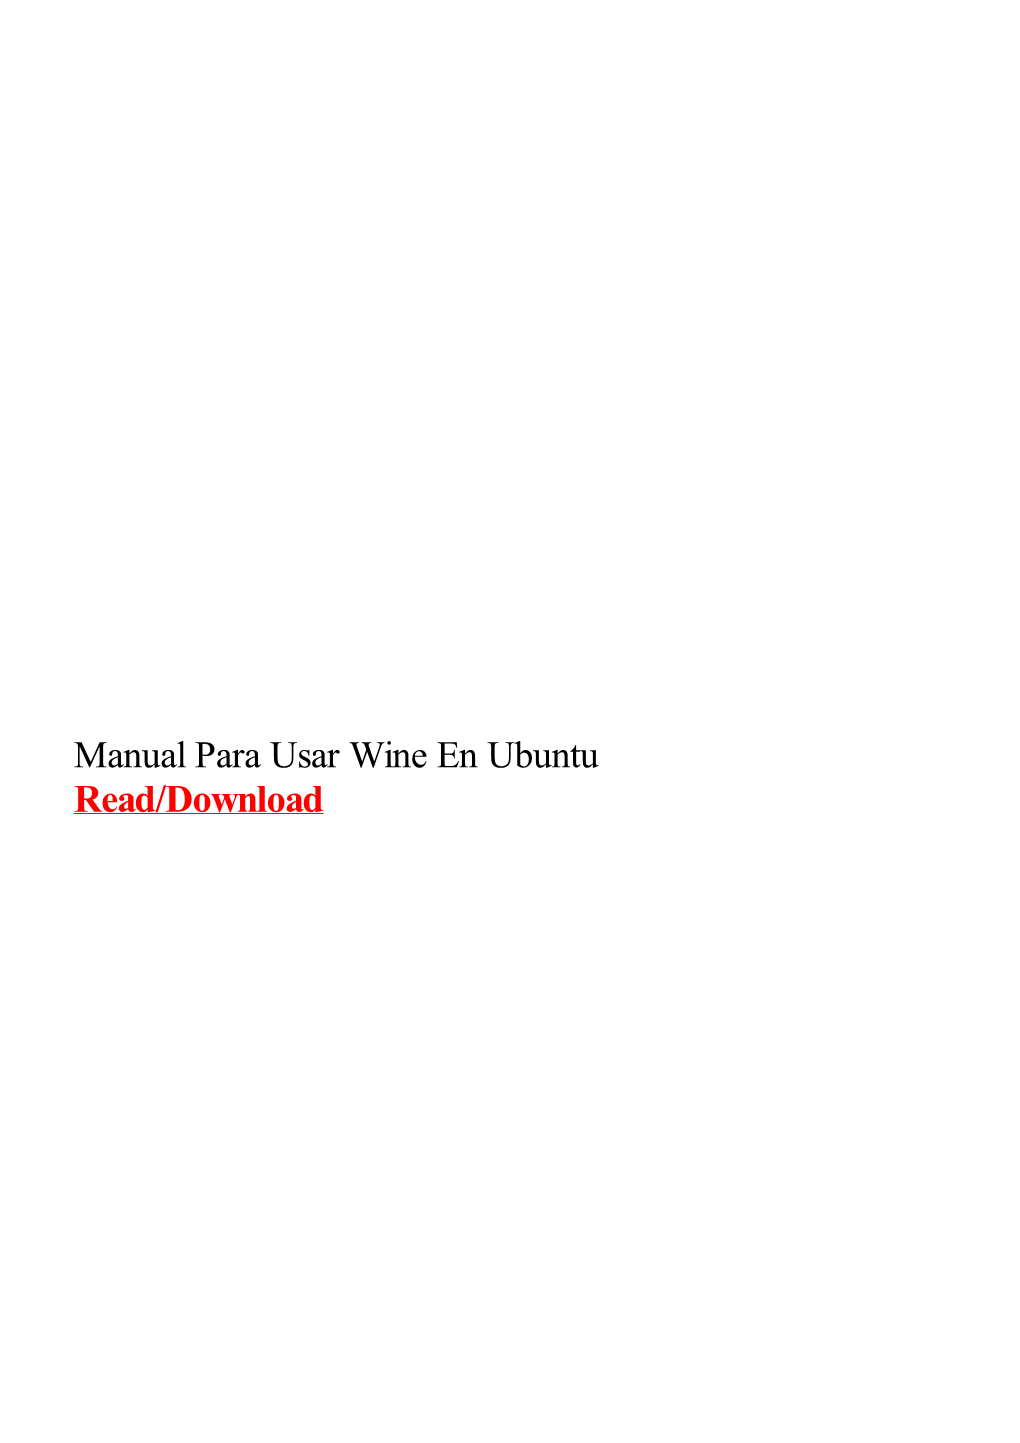 Manual Para Usar Wine En Ubuntu